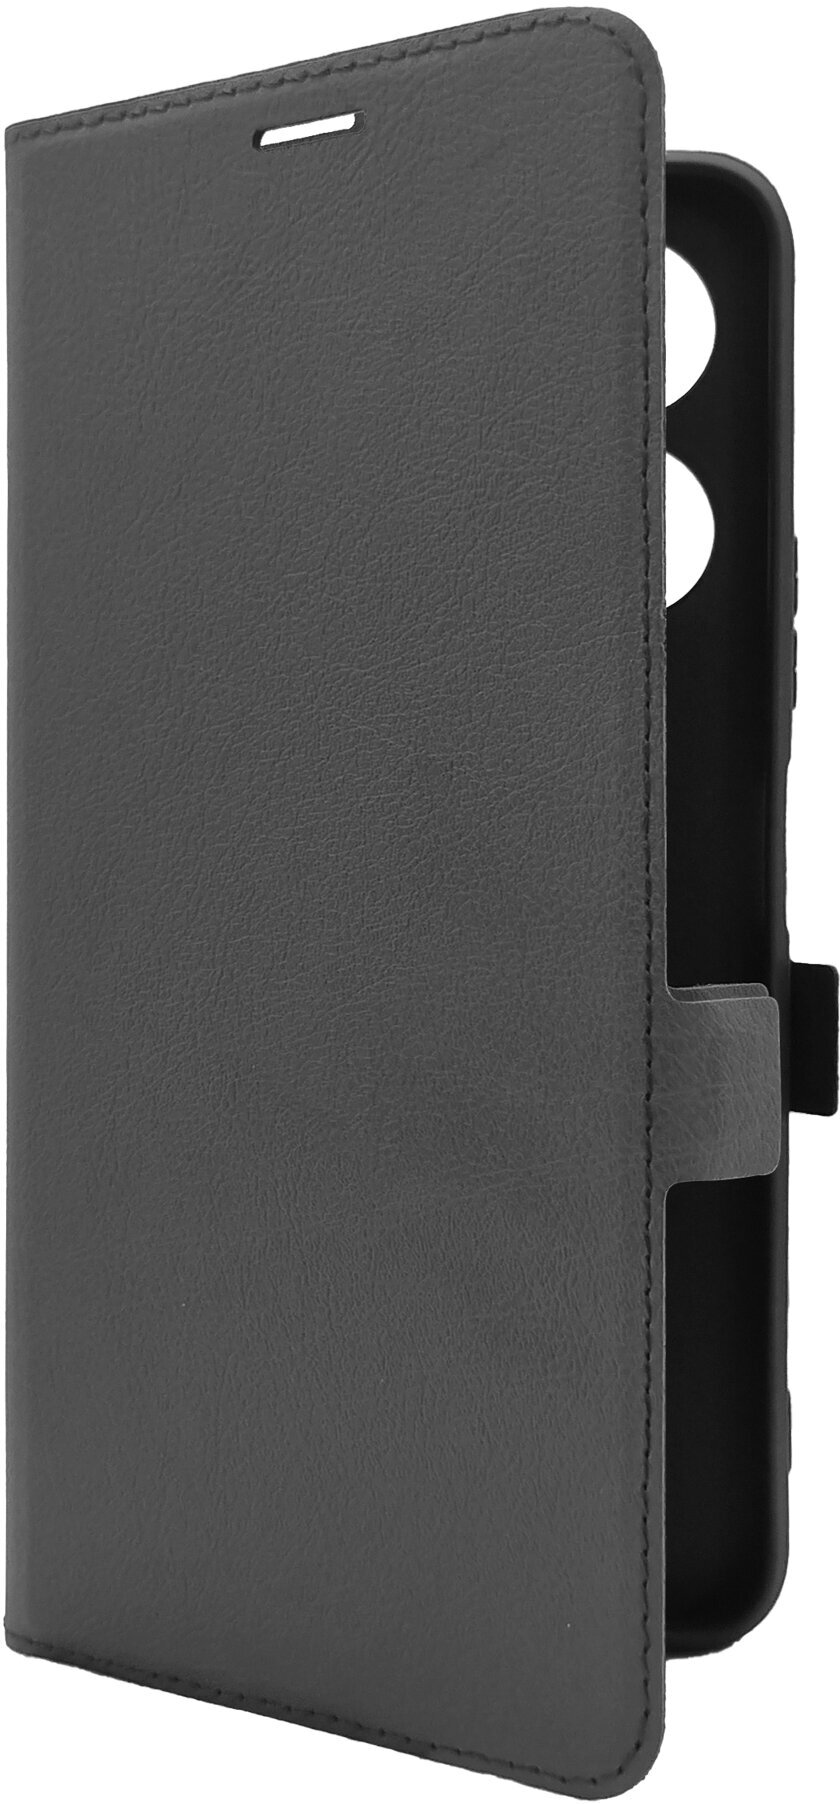 Чехол на Infinix Note 30i (Инфиникс Нот 30ай) черный книжка эко-кожа с функцией подставки отделением для карт и магнитами Book case Miuko